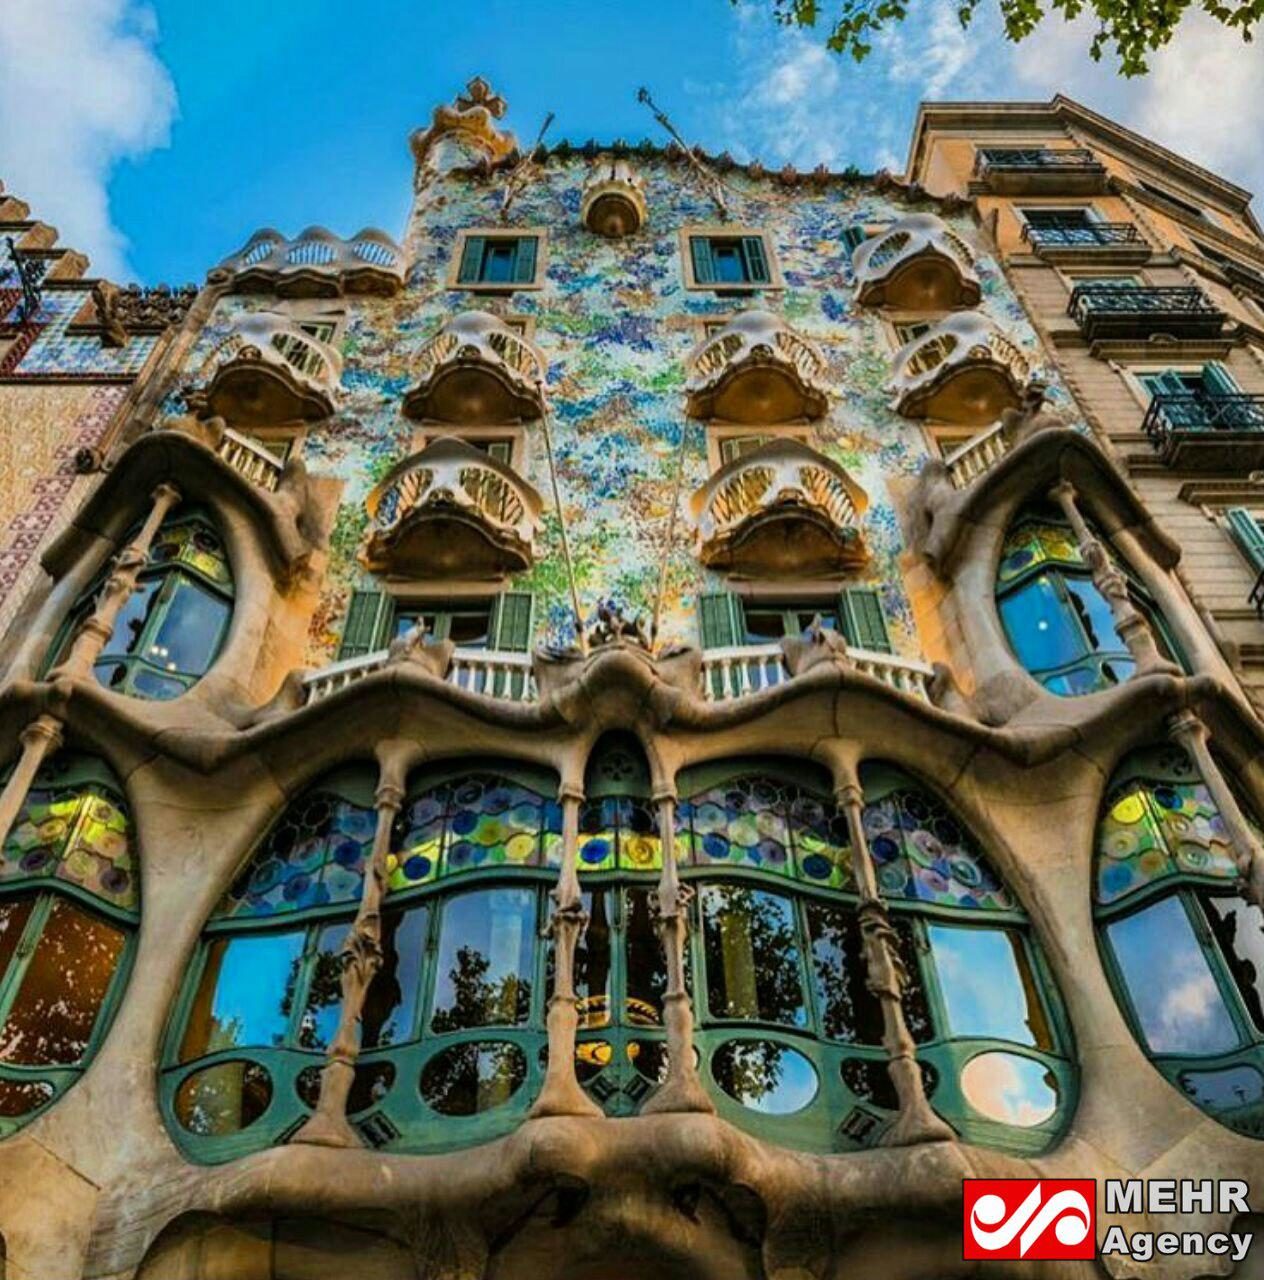 تصویر جالب از یک خانه استخوانی در بارسلونا